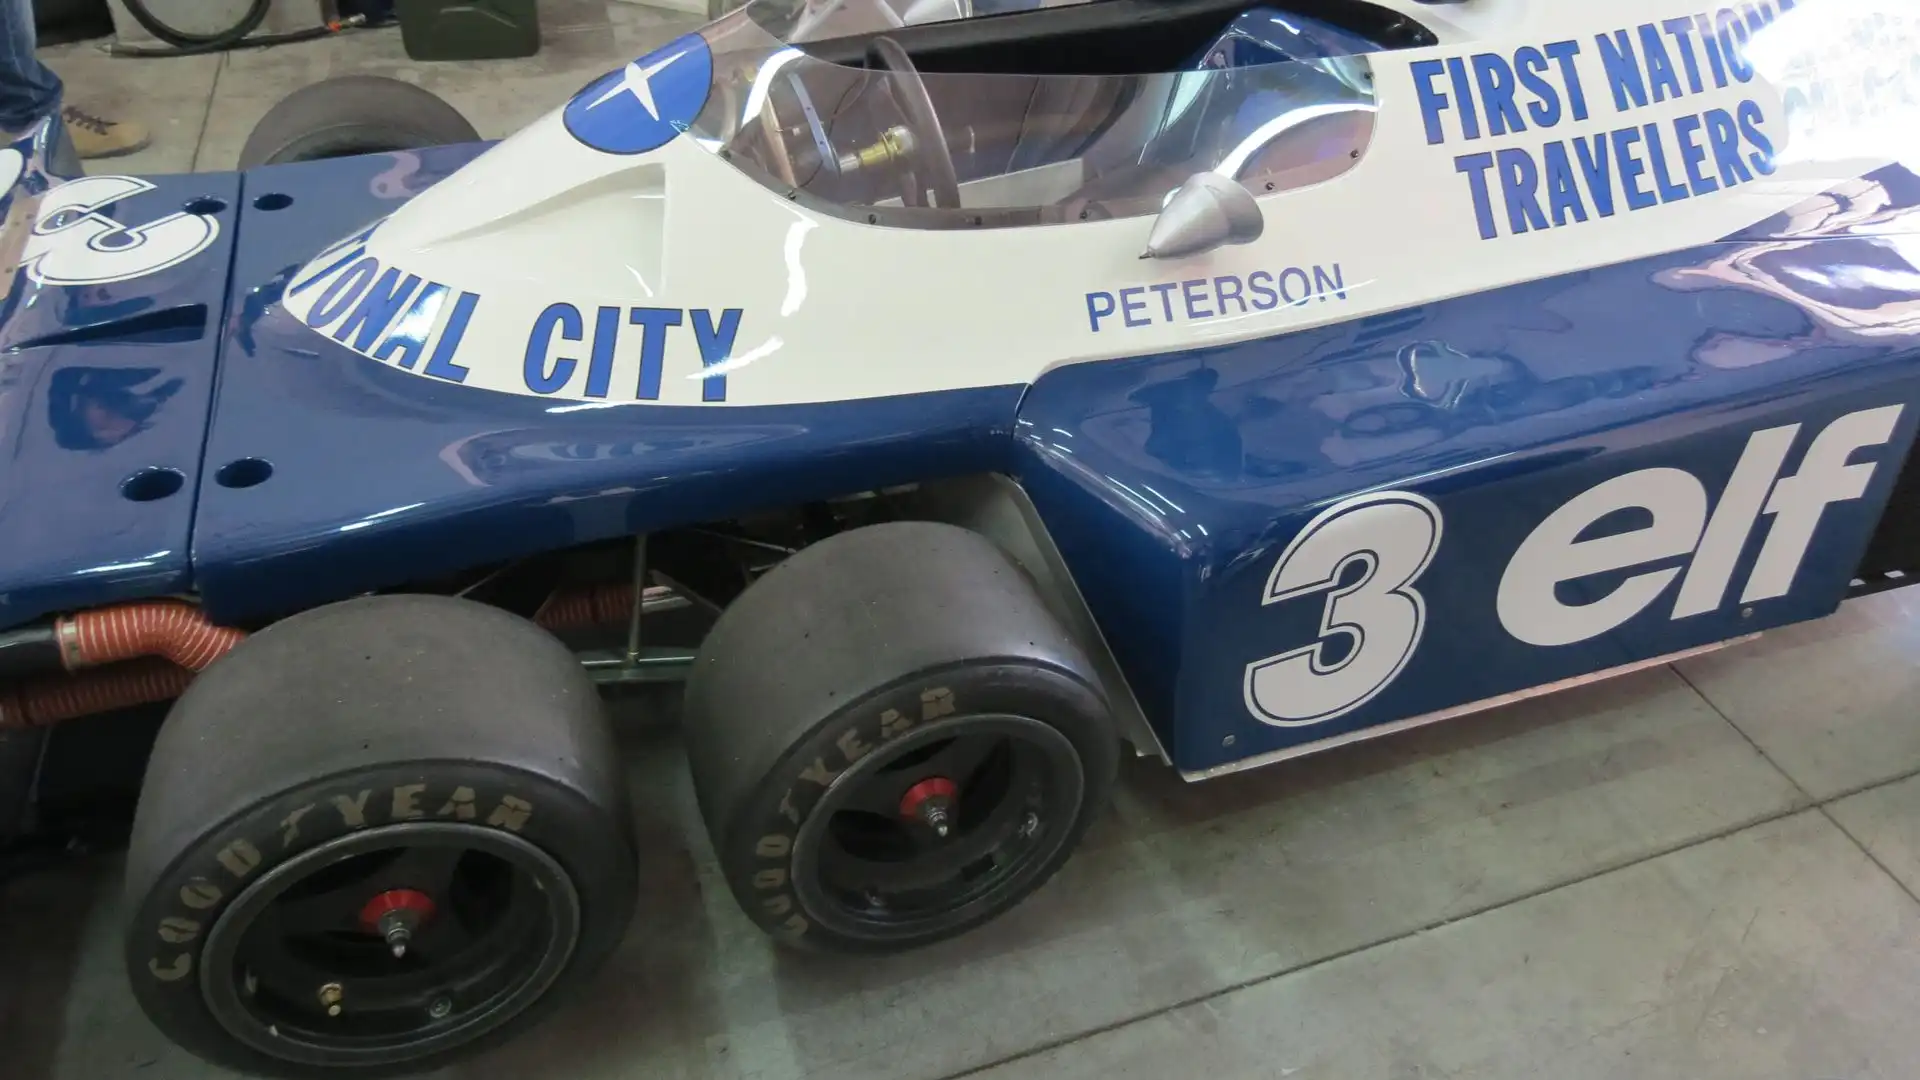 Il fascino della Tyrrell a 6 ruote resta immutato a quasi cinquanta anni dalla sua prima apparizione sulle piste di F1 (ph. Moreno Galimberti)